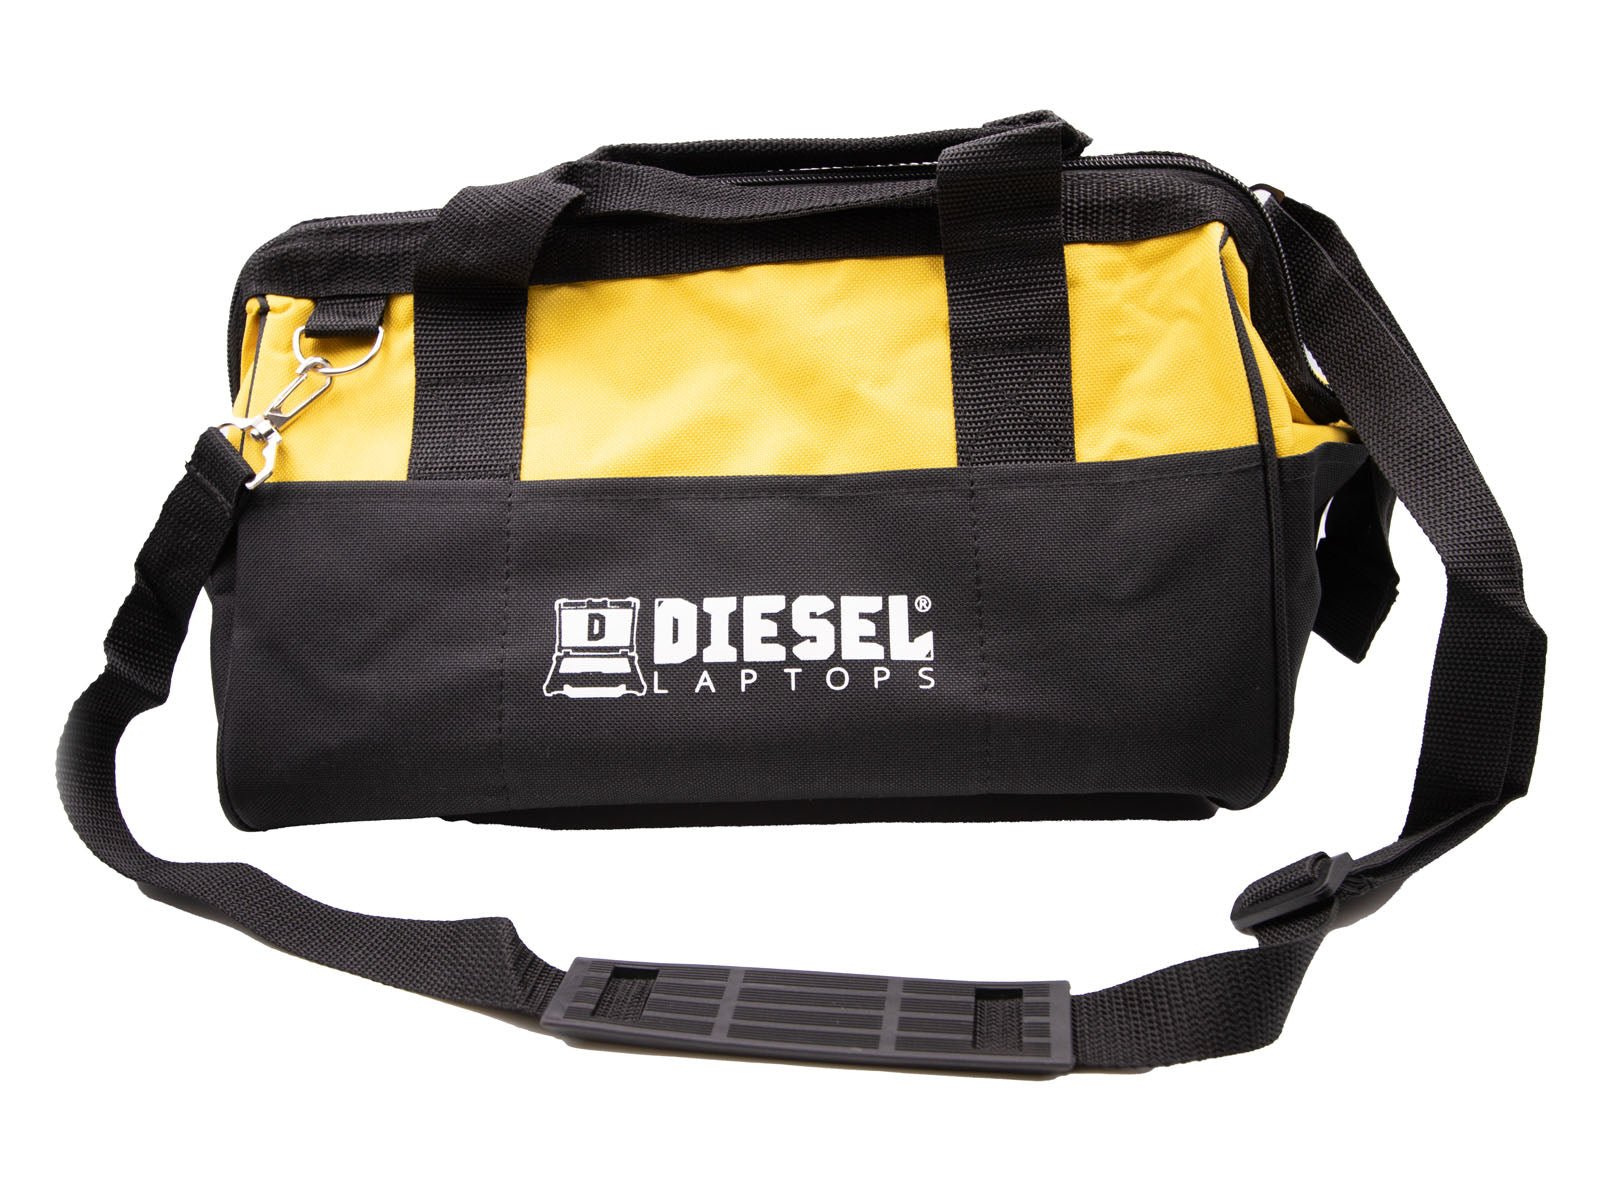 Diesel Laptops Tool Bag